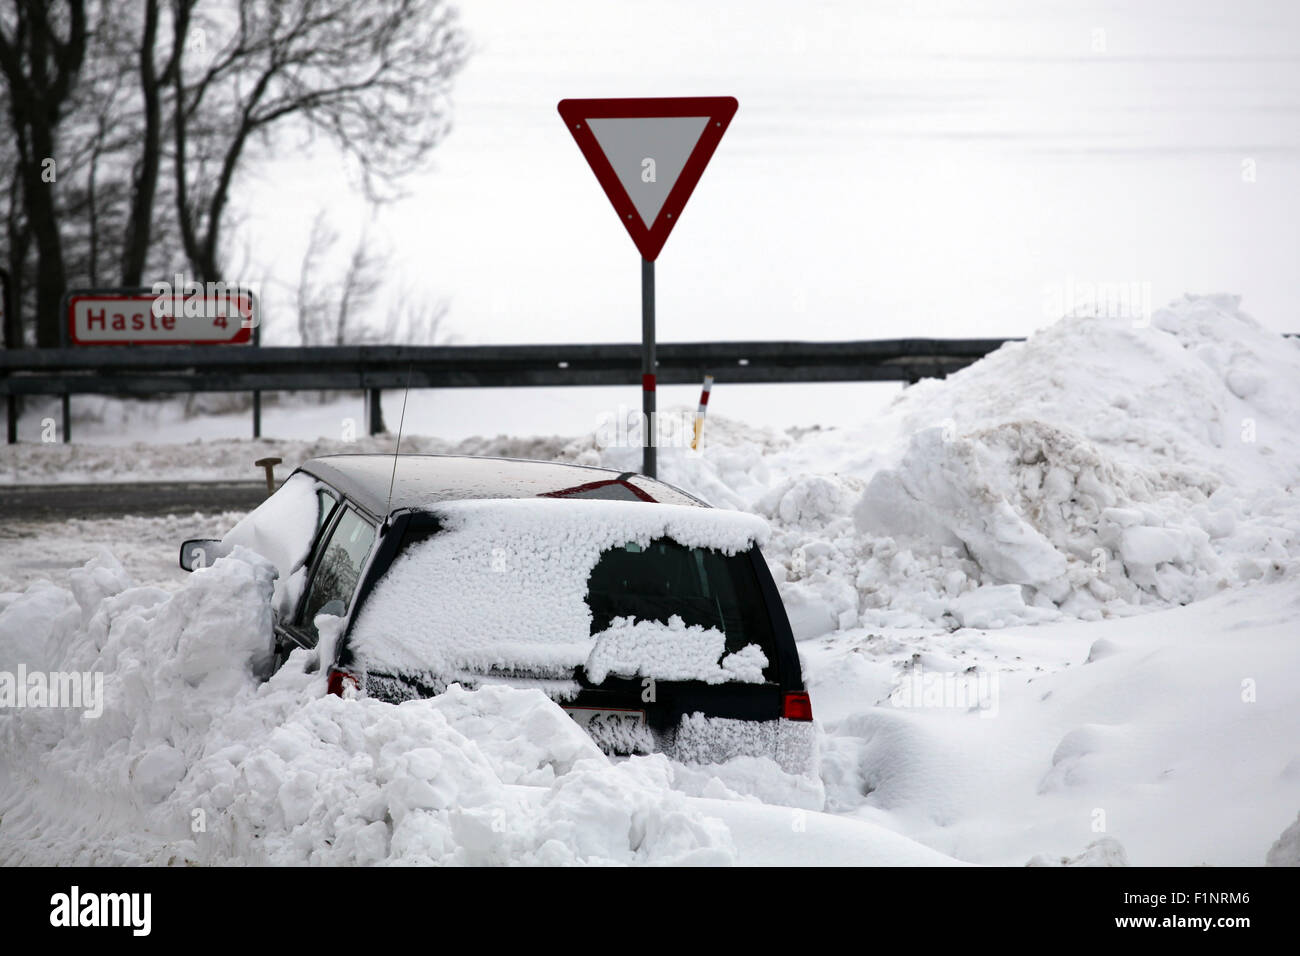 Snowbank at road stops car. Stock Photo